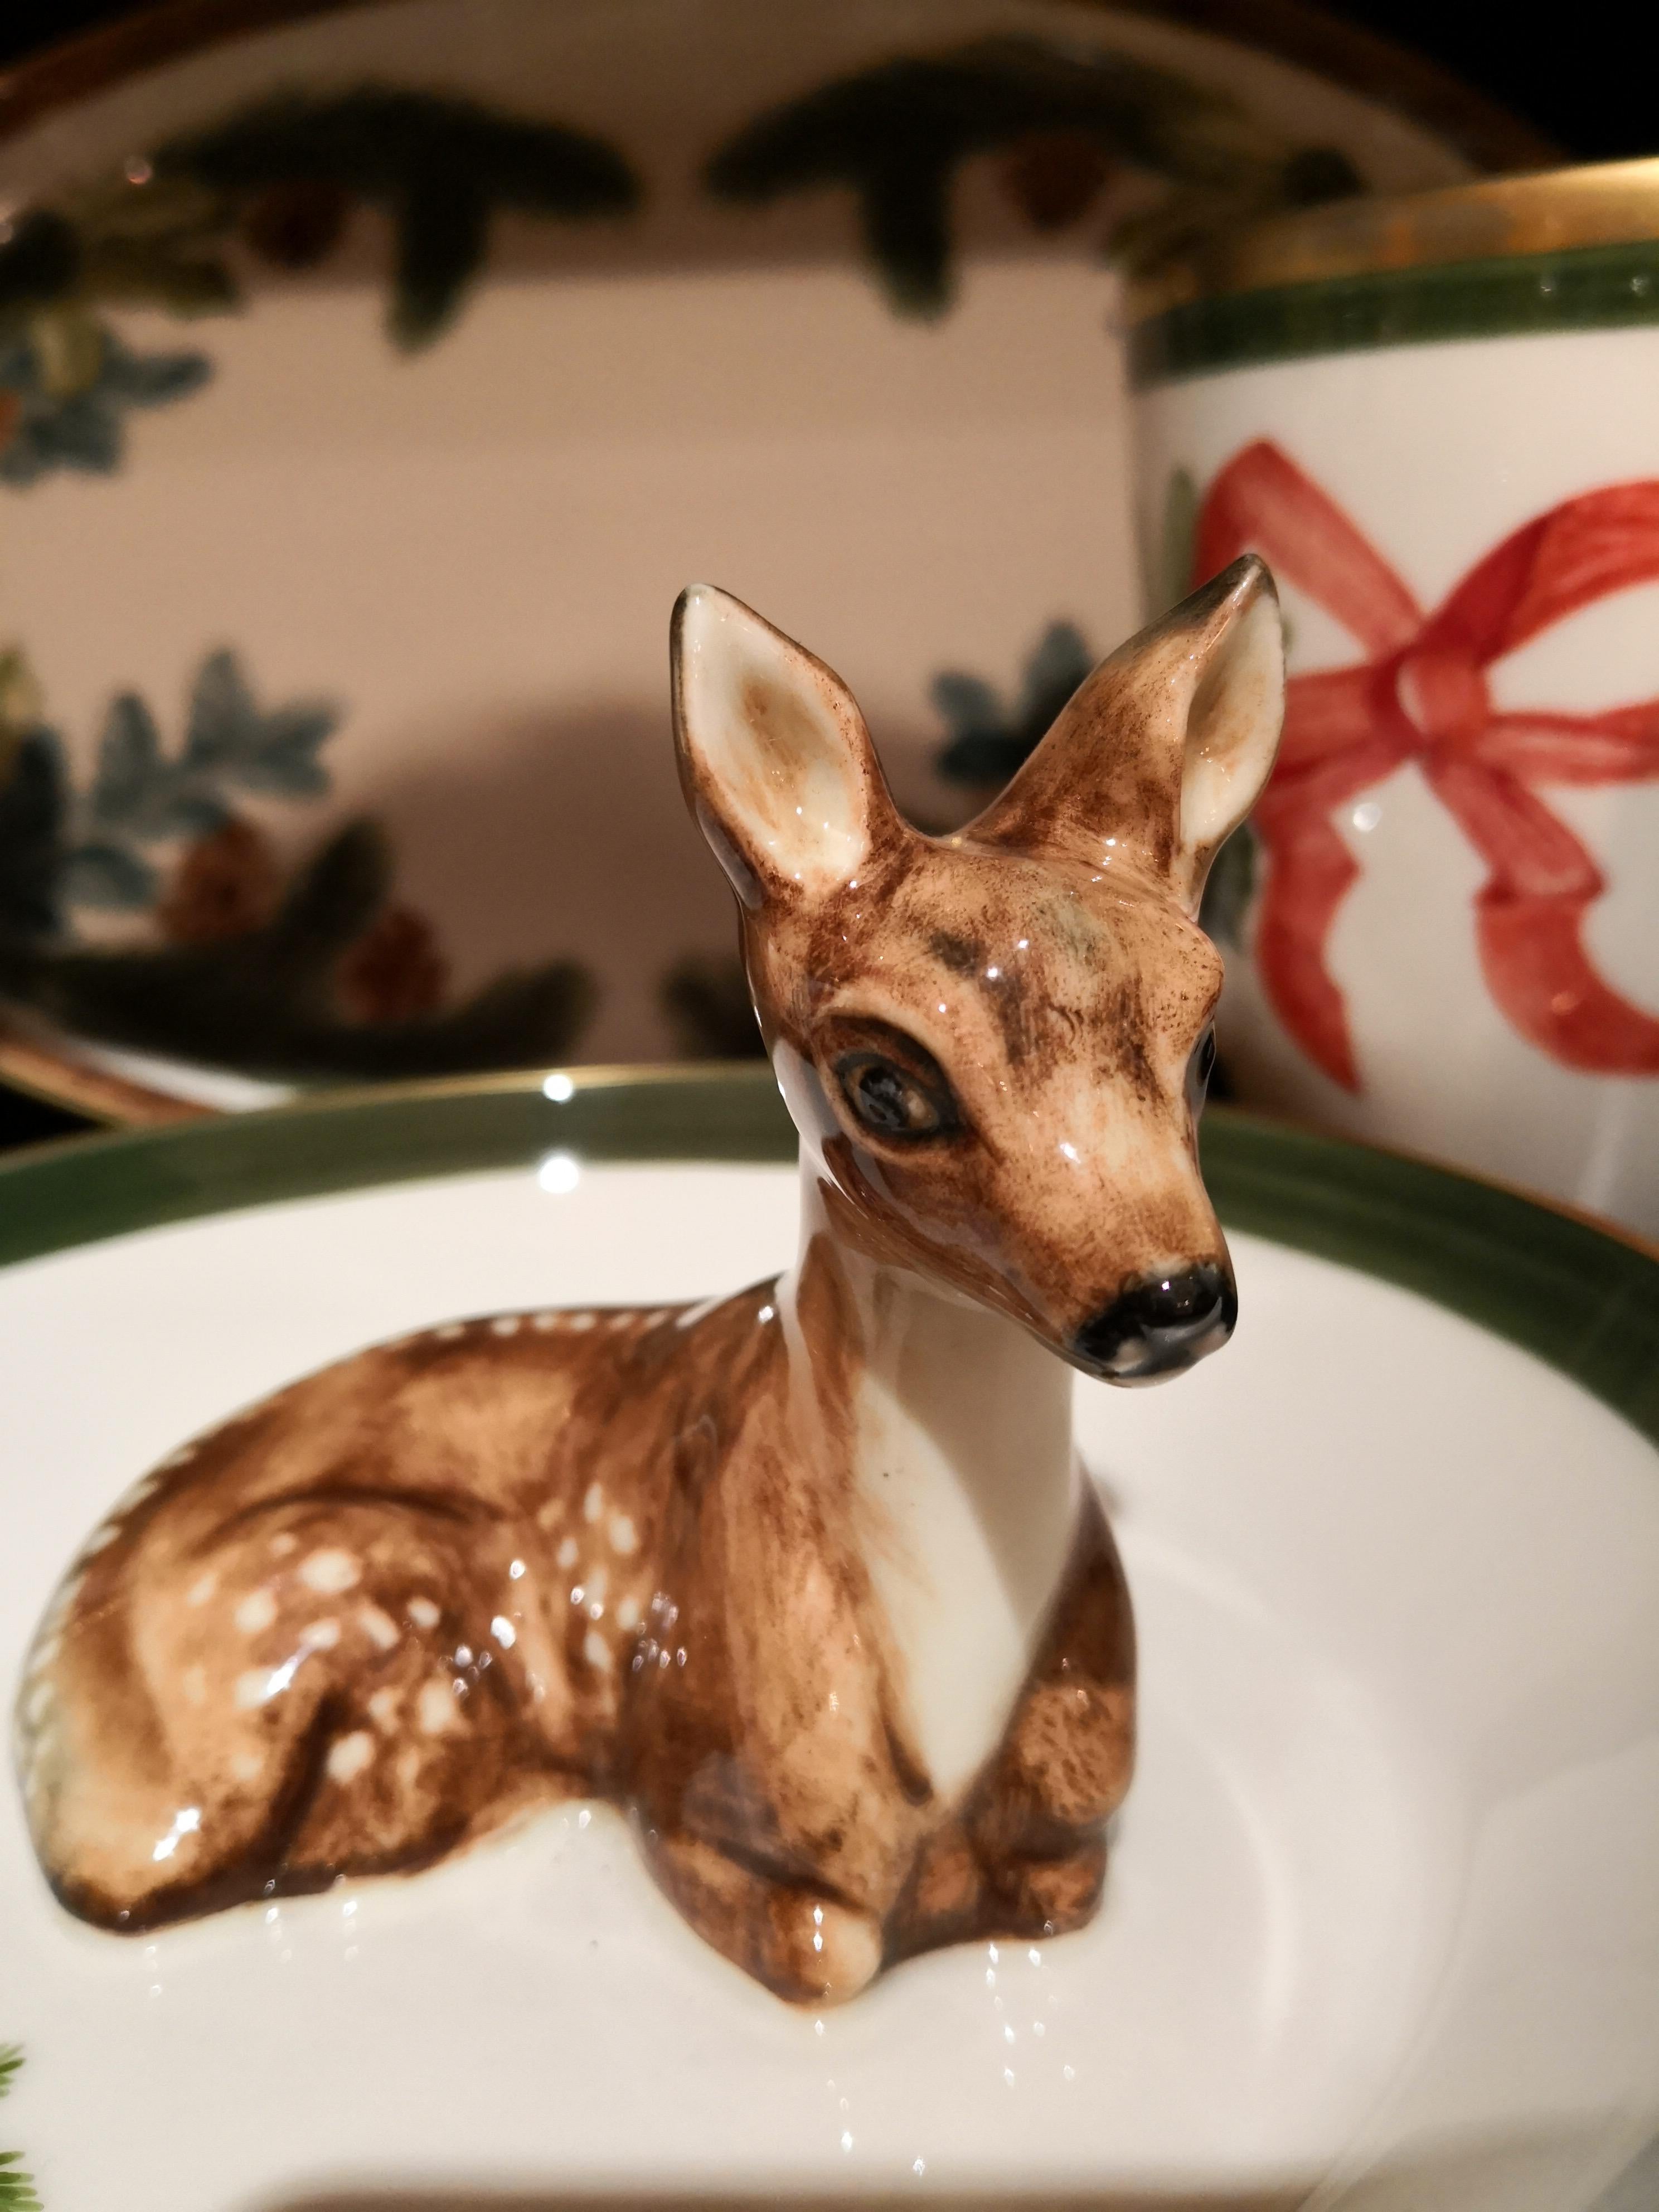 Komplett handgefertigte Porzellanschale mit einer freihändig gemalten, naturgetreuen Bambi-Figur in Braun. Das Bambi sitzt in der Mitte der Schale, um Nüsse oder Süßigkeiten zu dekorieren. Umrandet mit einer feinen 24-karätigen Goldlinie.